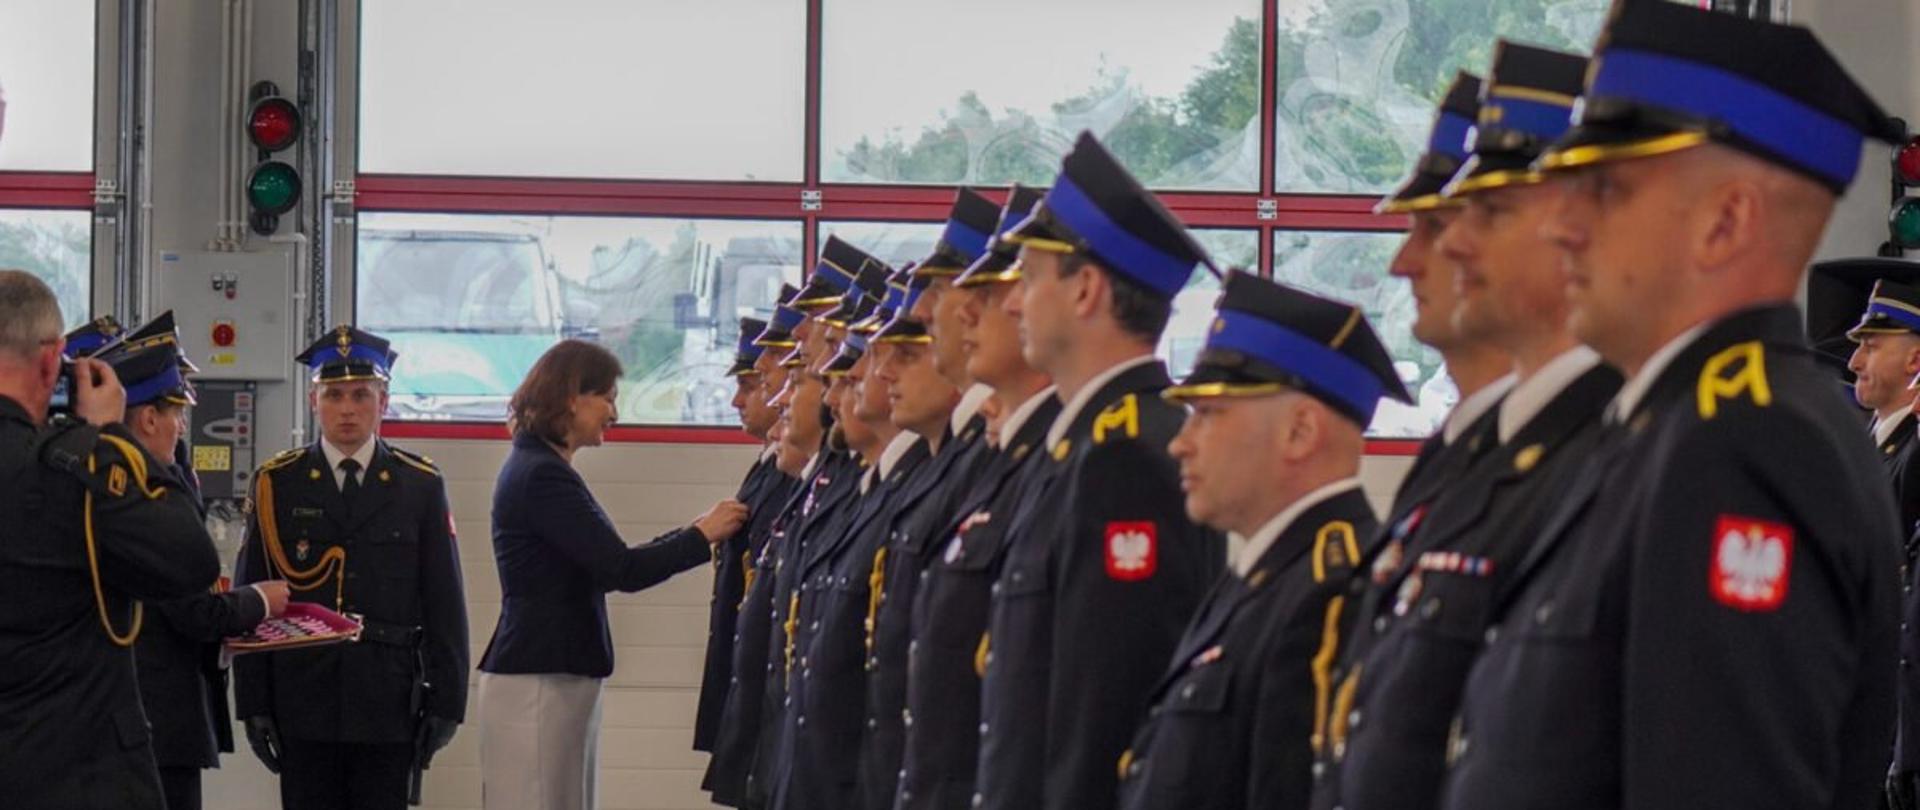 Wojewoda podkarpacki Ewa Leniart wręcza odznaczenia strażakom podczas Wojewódzkich Obchodów Dnia Strażaka w Rzeszowie